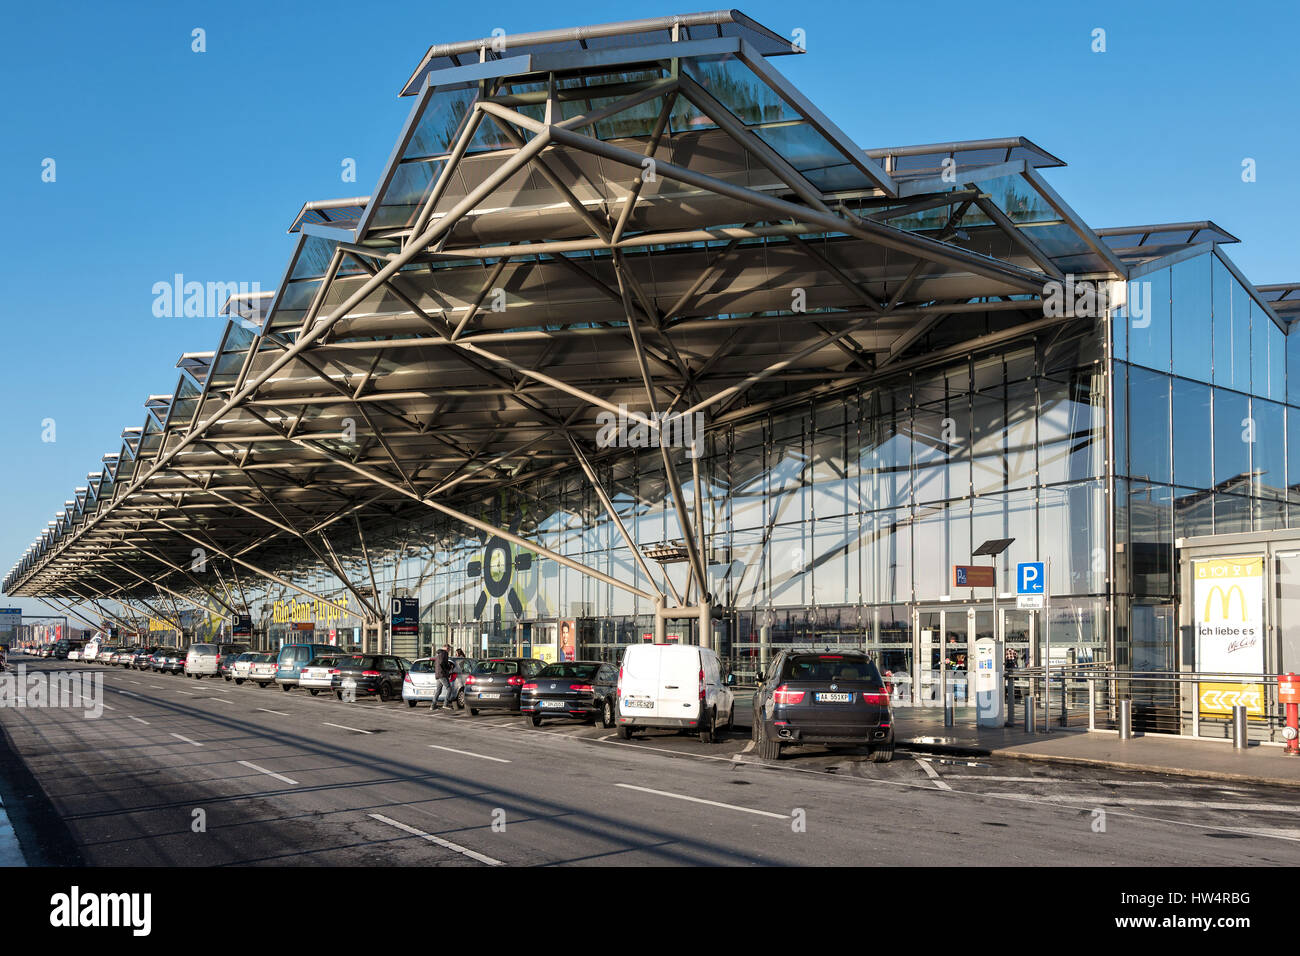 L'aéroport de Cologne Bonn (Fondation Konrad Adenauer) - Bâtiment principal du Terminal 2. Unités de trafic par l'aéroport est en cinquième position en Allemagne. Banque D'Images